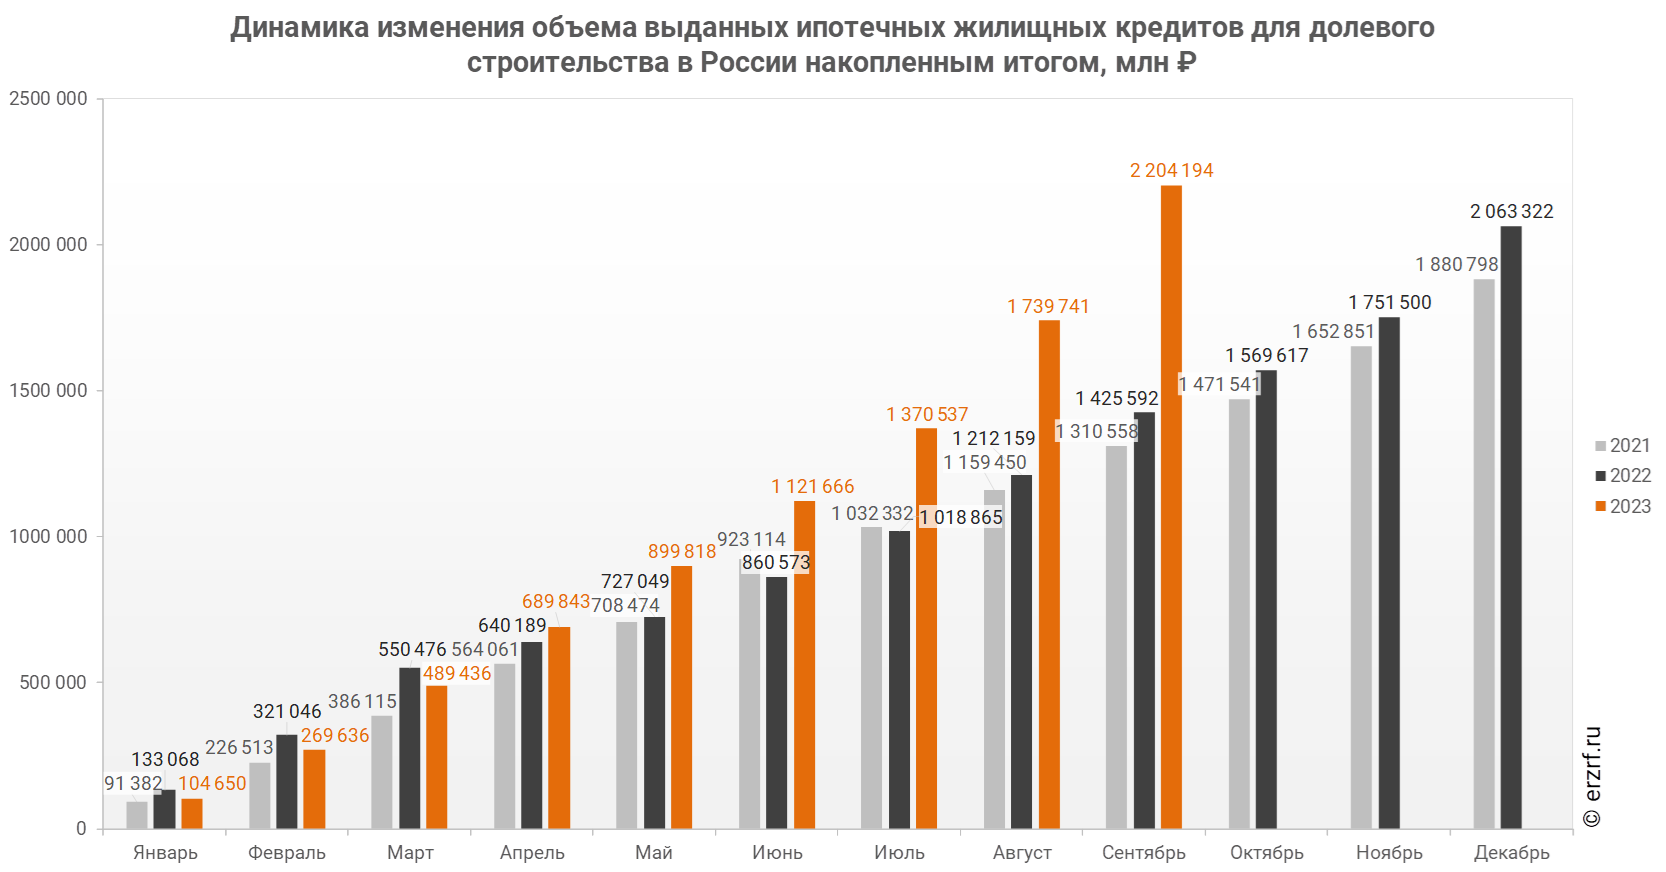 Динамика изменения объема выданных ипотечных жилищных кредитов для долевого строительства в России накопленным итогом, млн ₽